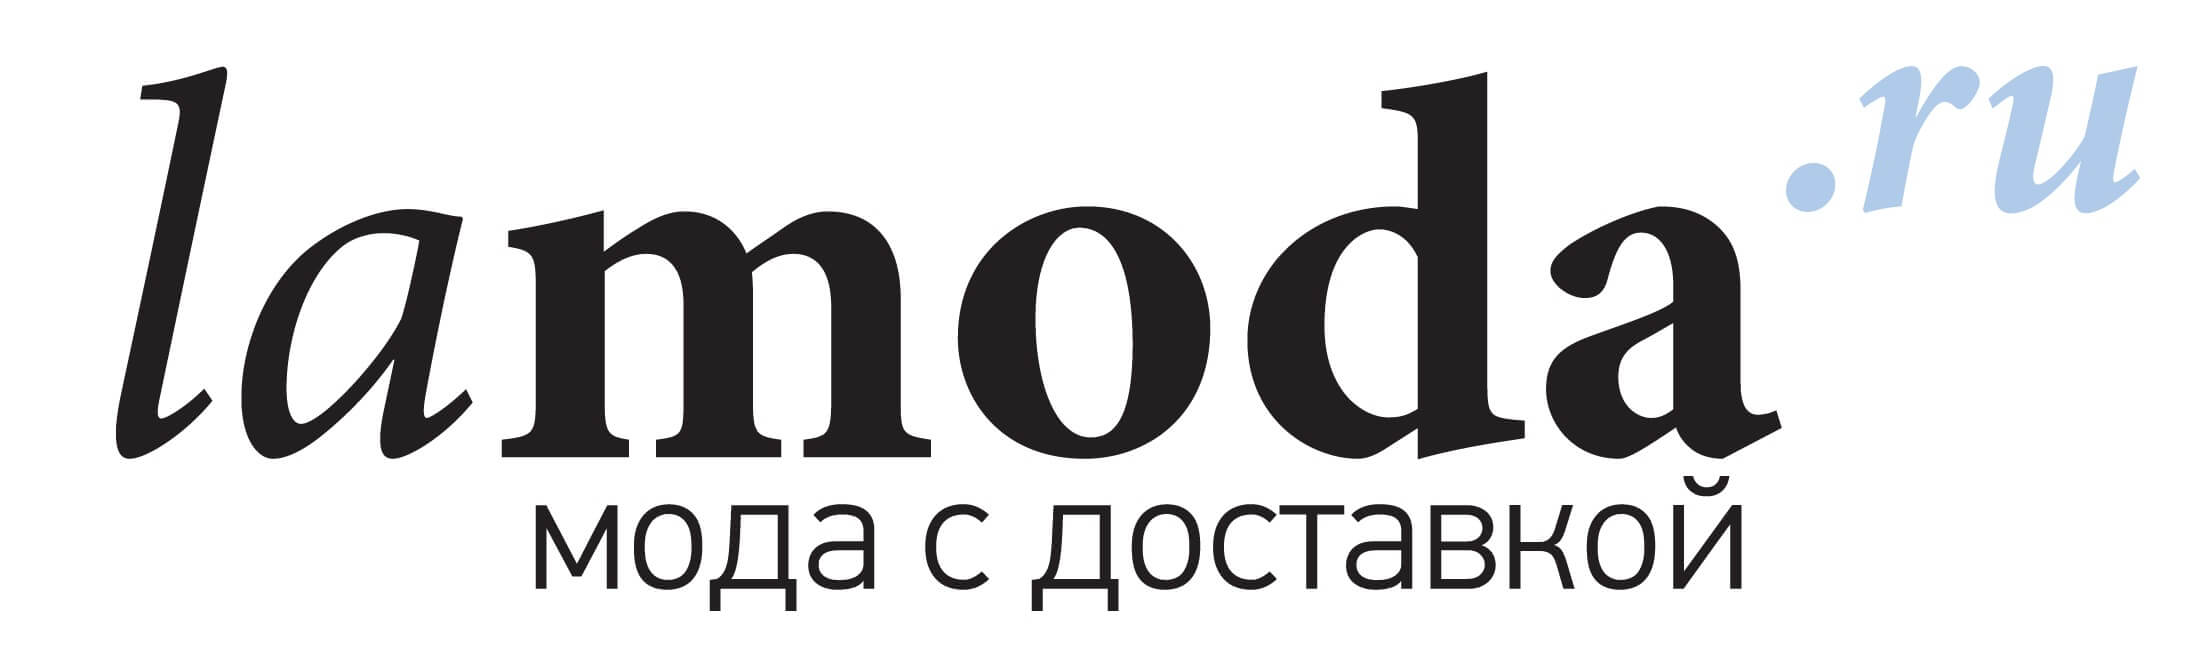 Интернет Магазин Одежды Недорого Санкт Петербург